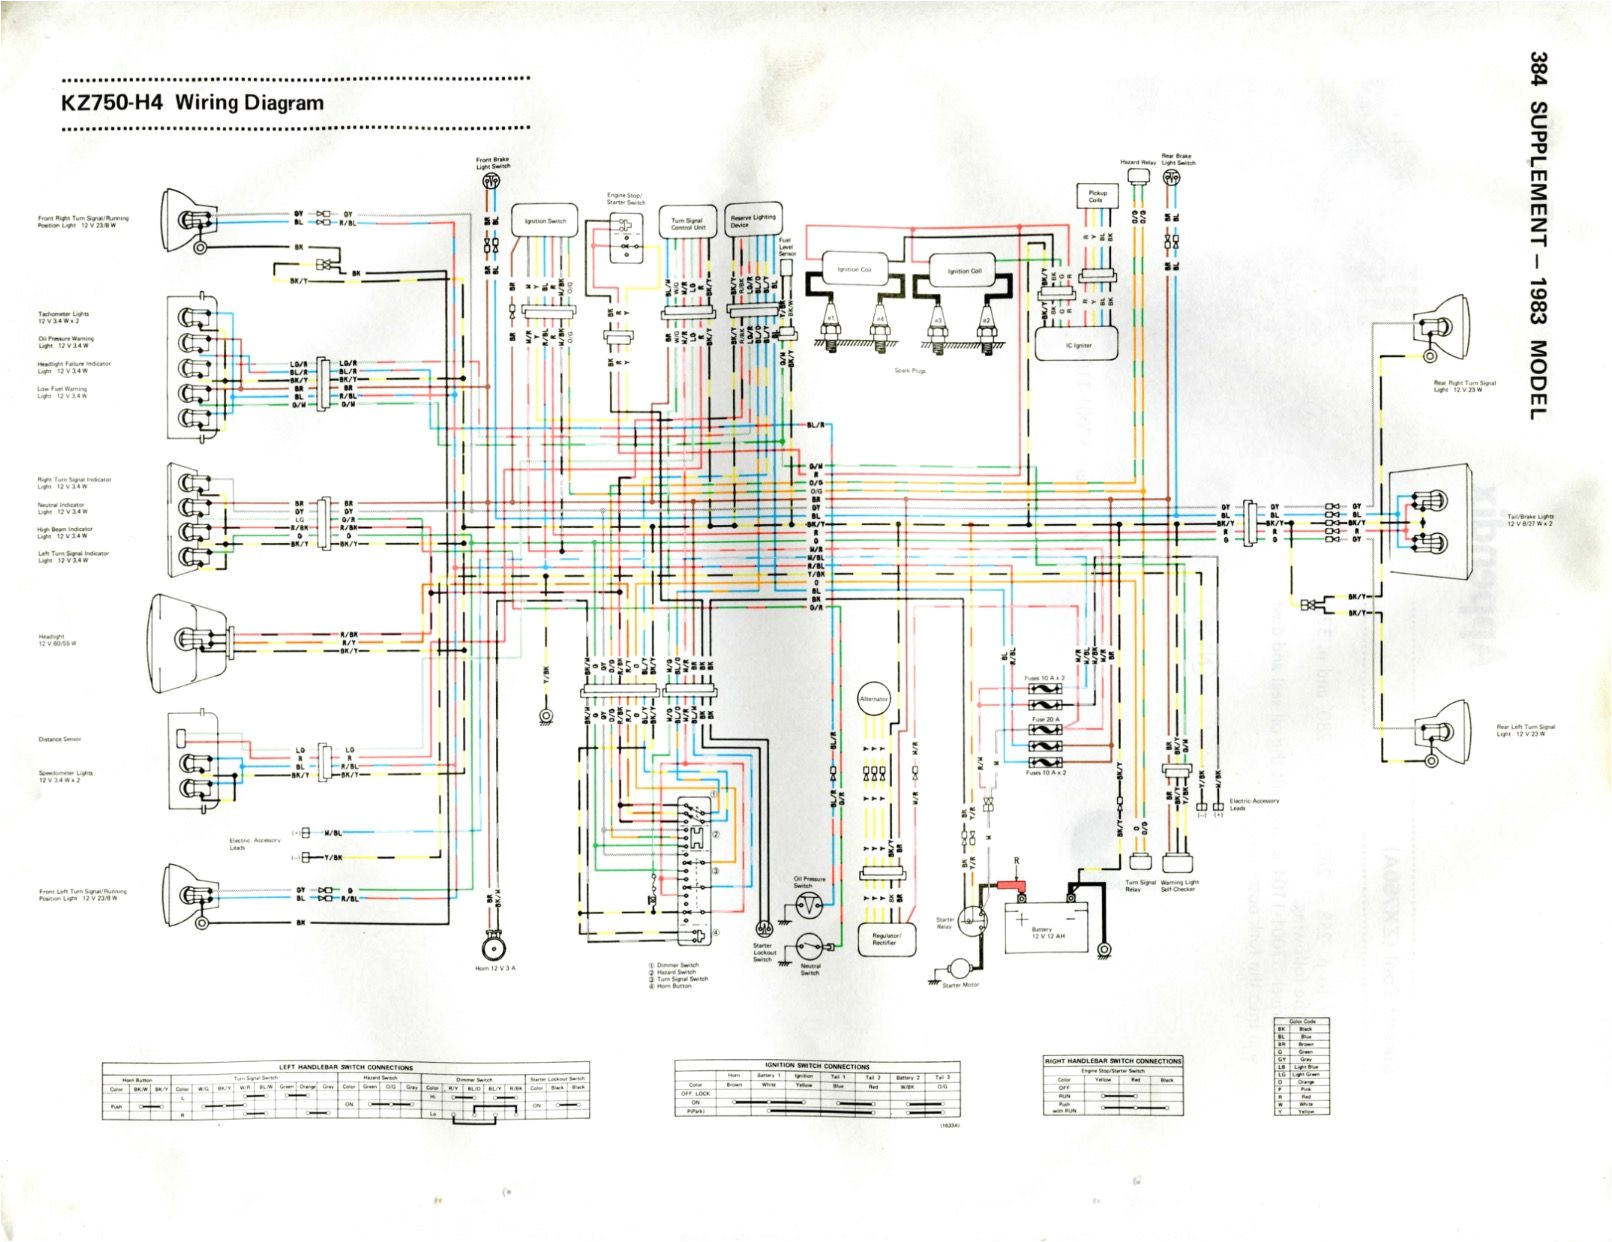 kawasaki kz750 wiring diagram wiring diagram sheetkawasaki kz750 wiring diagram